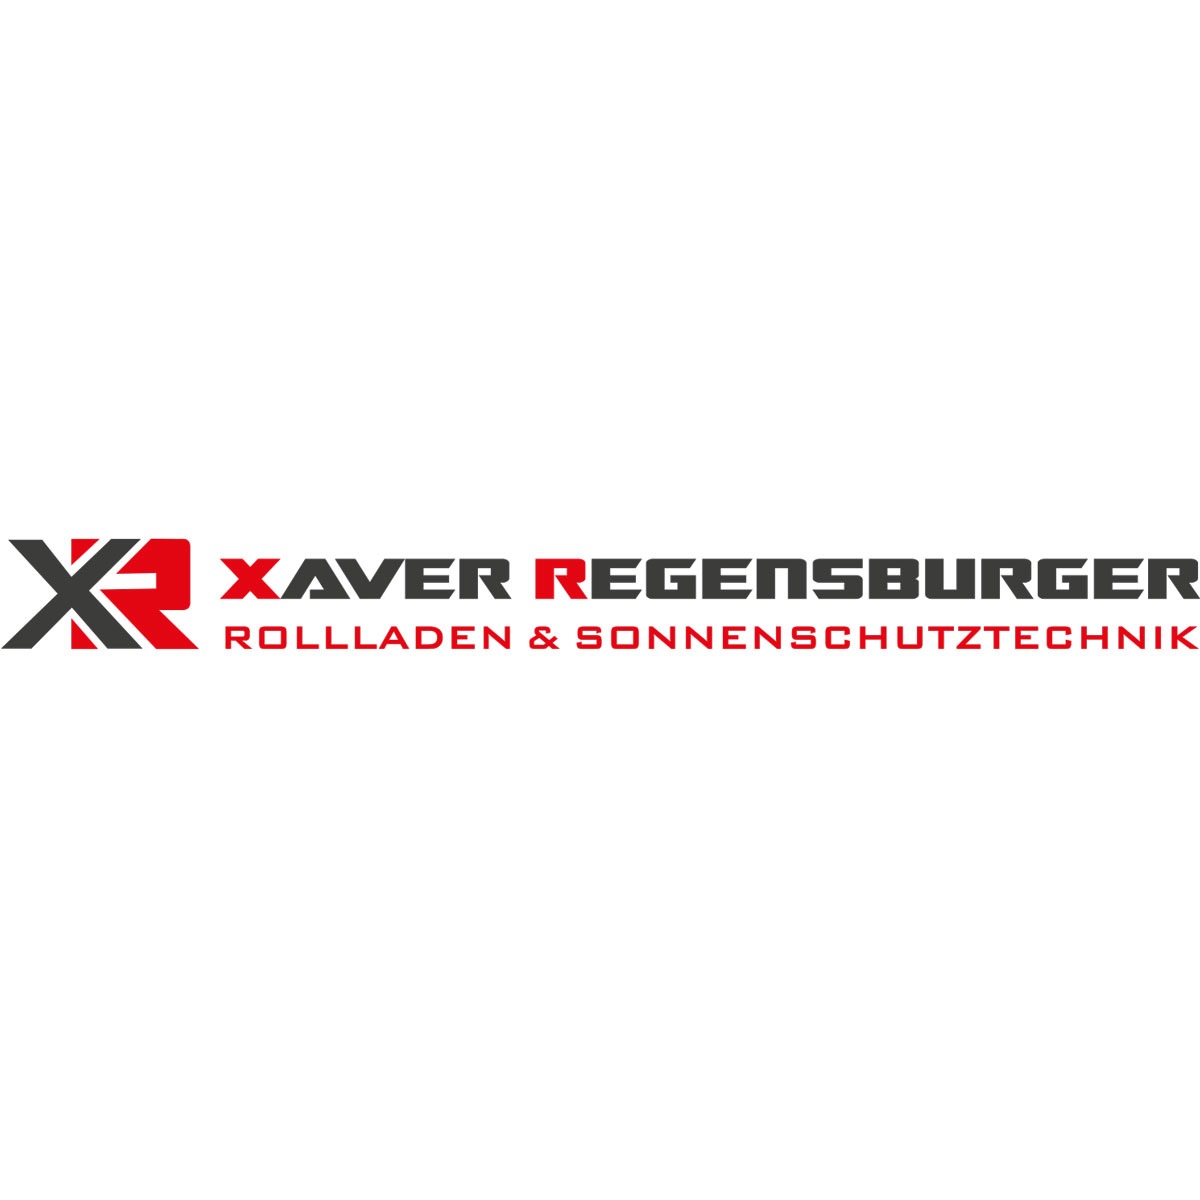 Logo Rollladenbau Xaver Regensburger - Logo